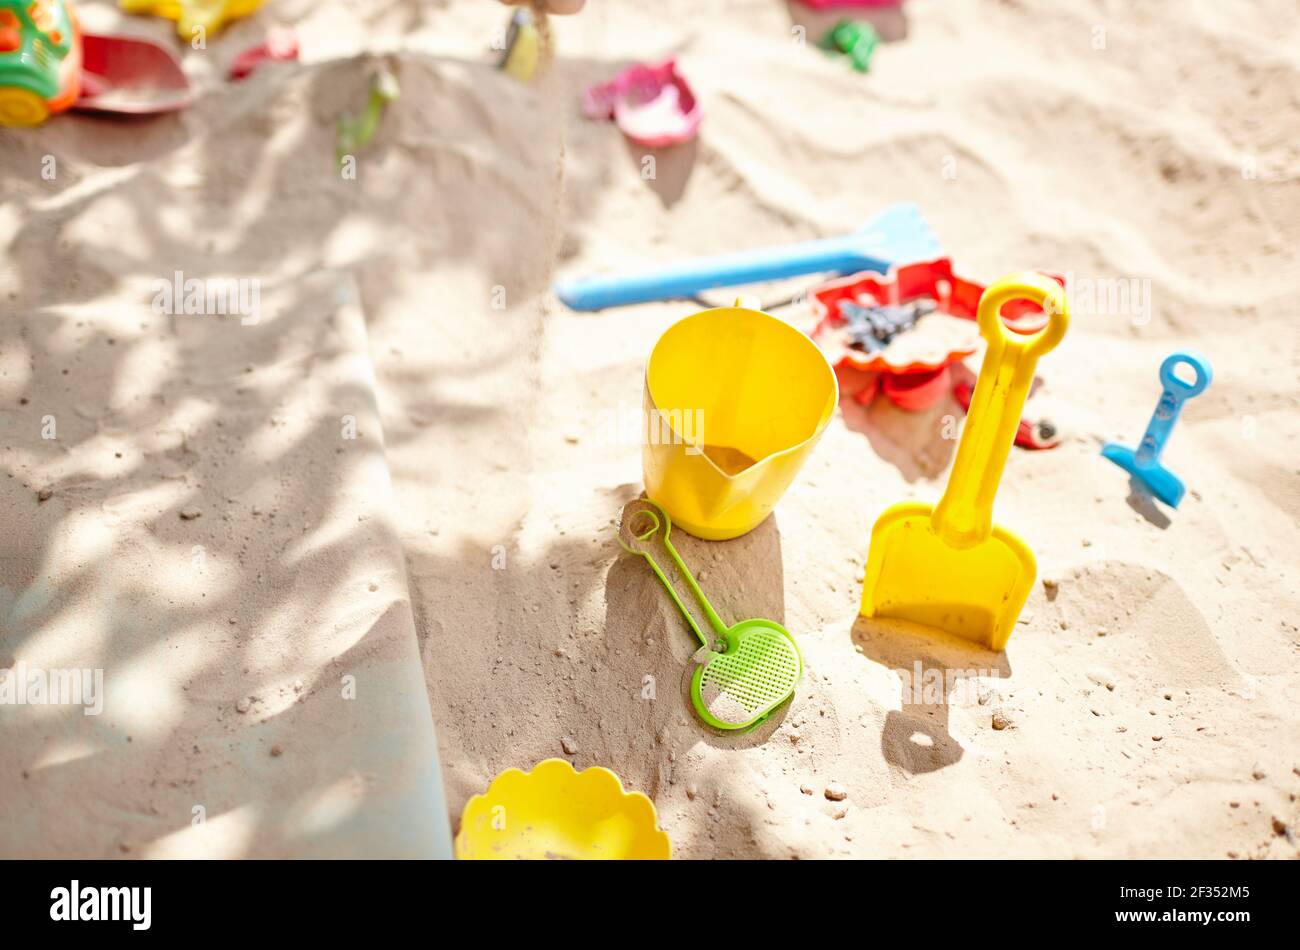 Sandbox all'aperto. Sandbox per bambini con vari giocattoli per il gioco. Concetto estivo. Messa a fuoco selettiva con profondità di campo ridotta Foto Stock